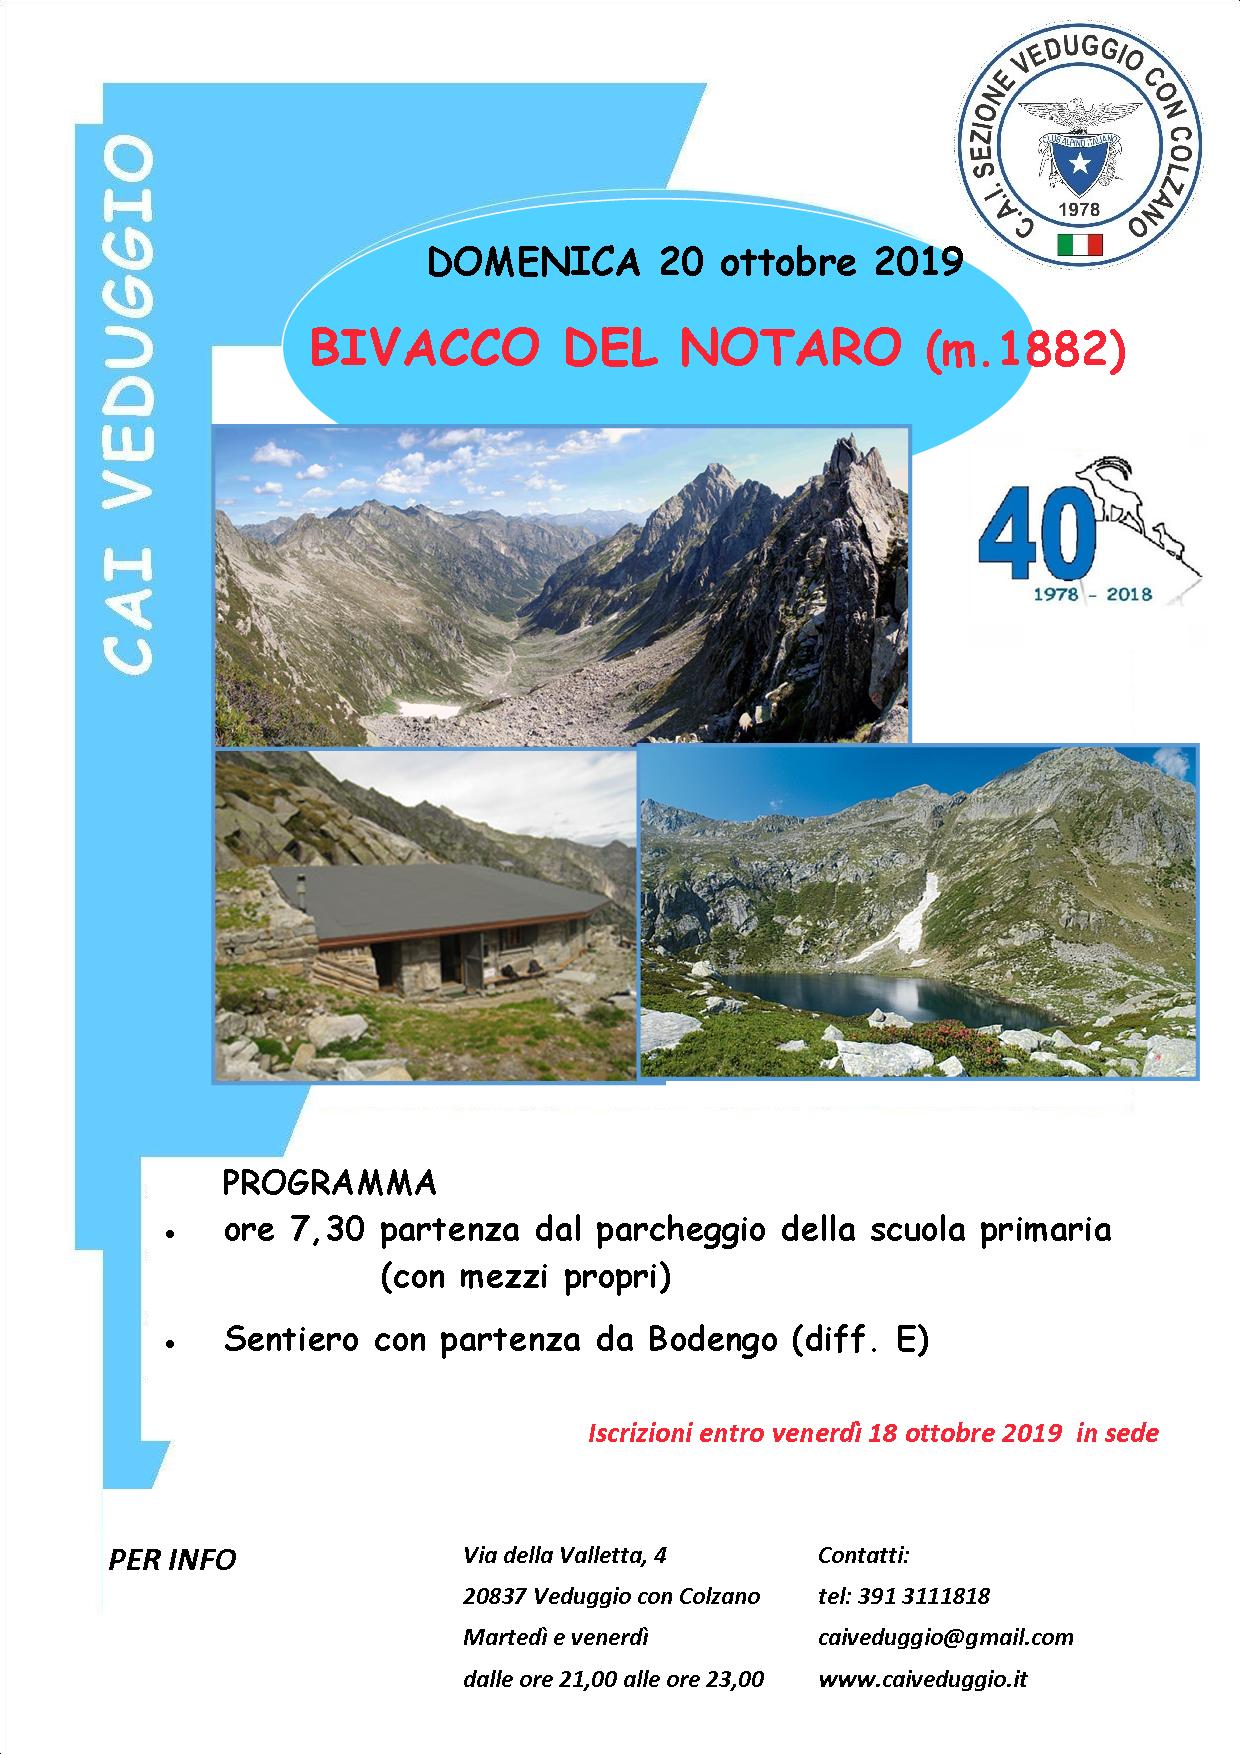 Domenica 20 ottobre 2019 – Bivacco del Notaro (Val Bodengo)